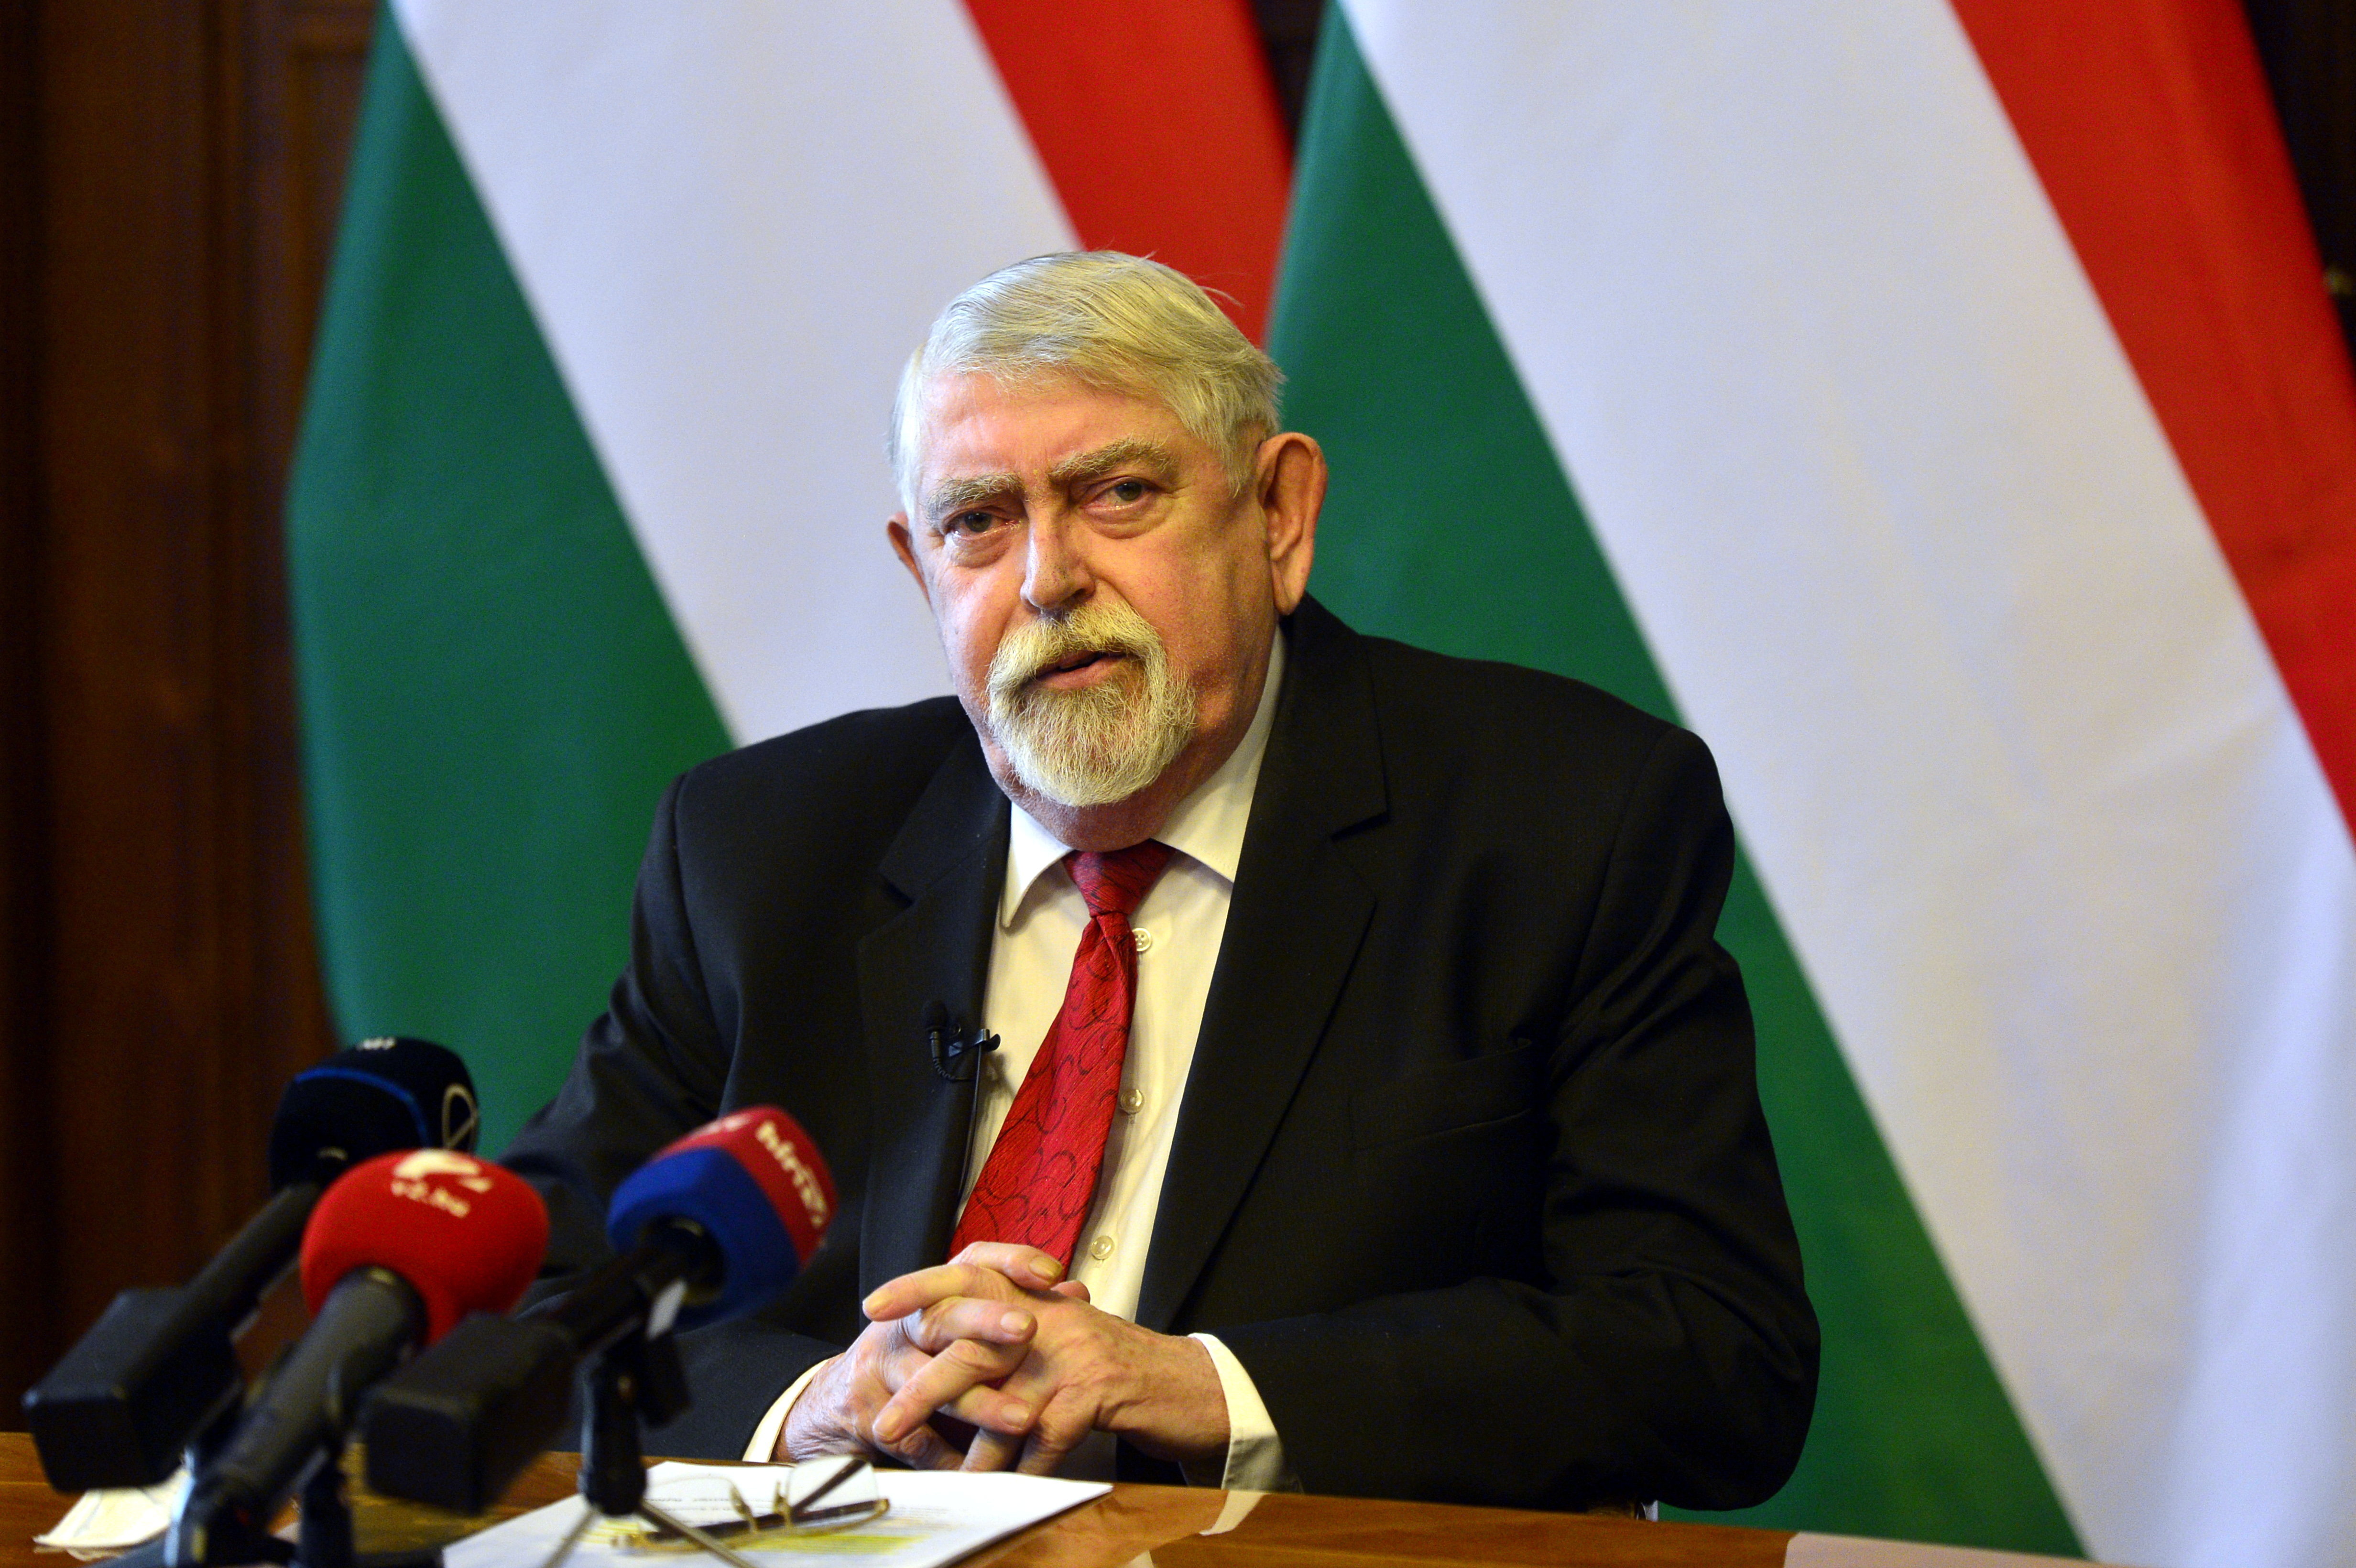 Kásler Miklós: A keresztény értékek követése átsegíti Magyarországot a nehézségeken